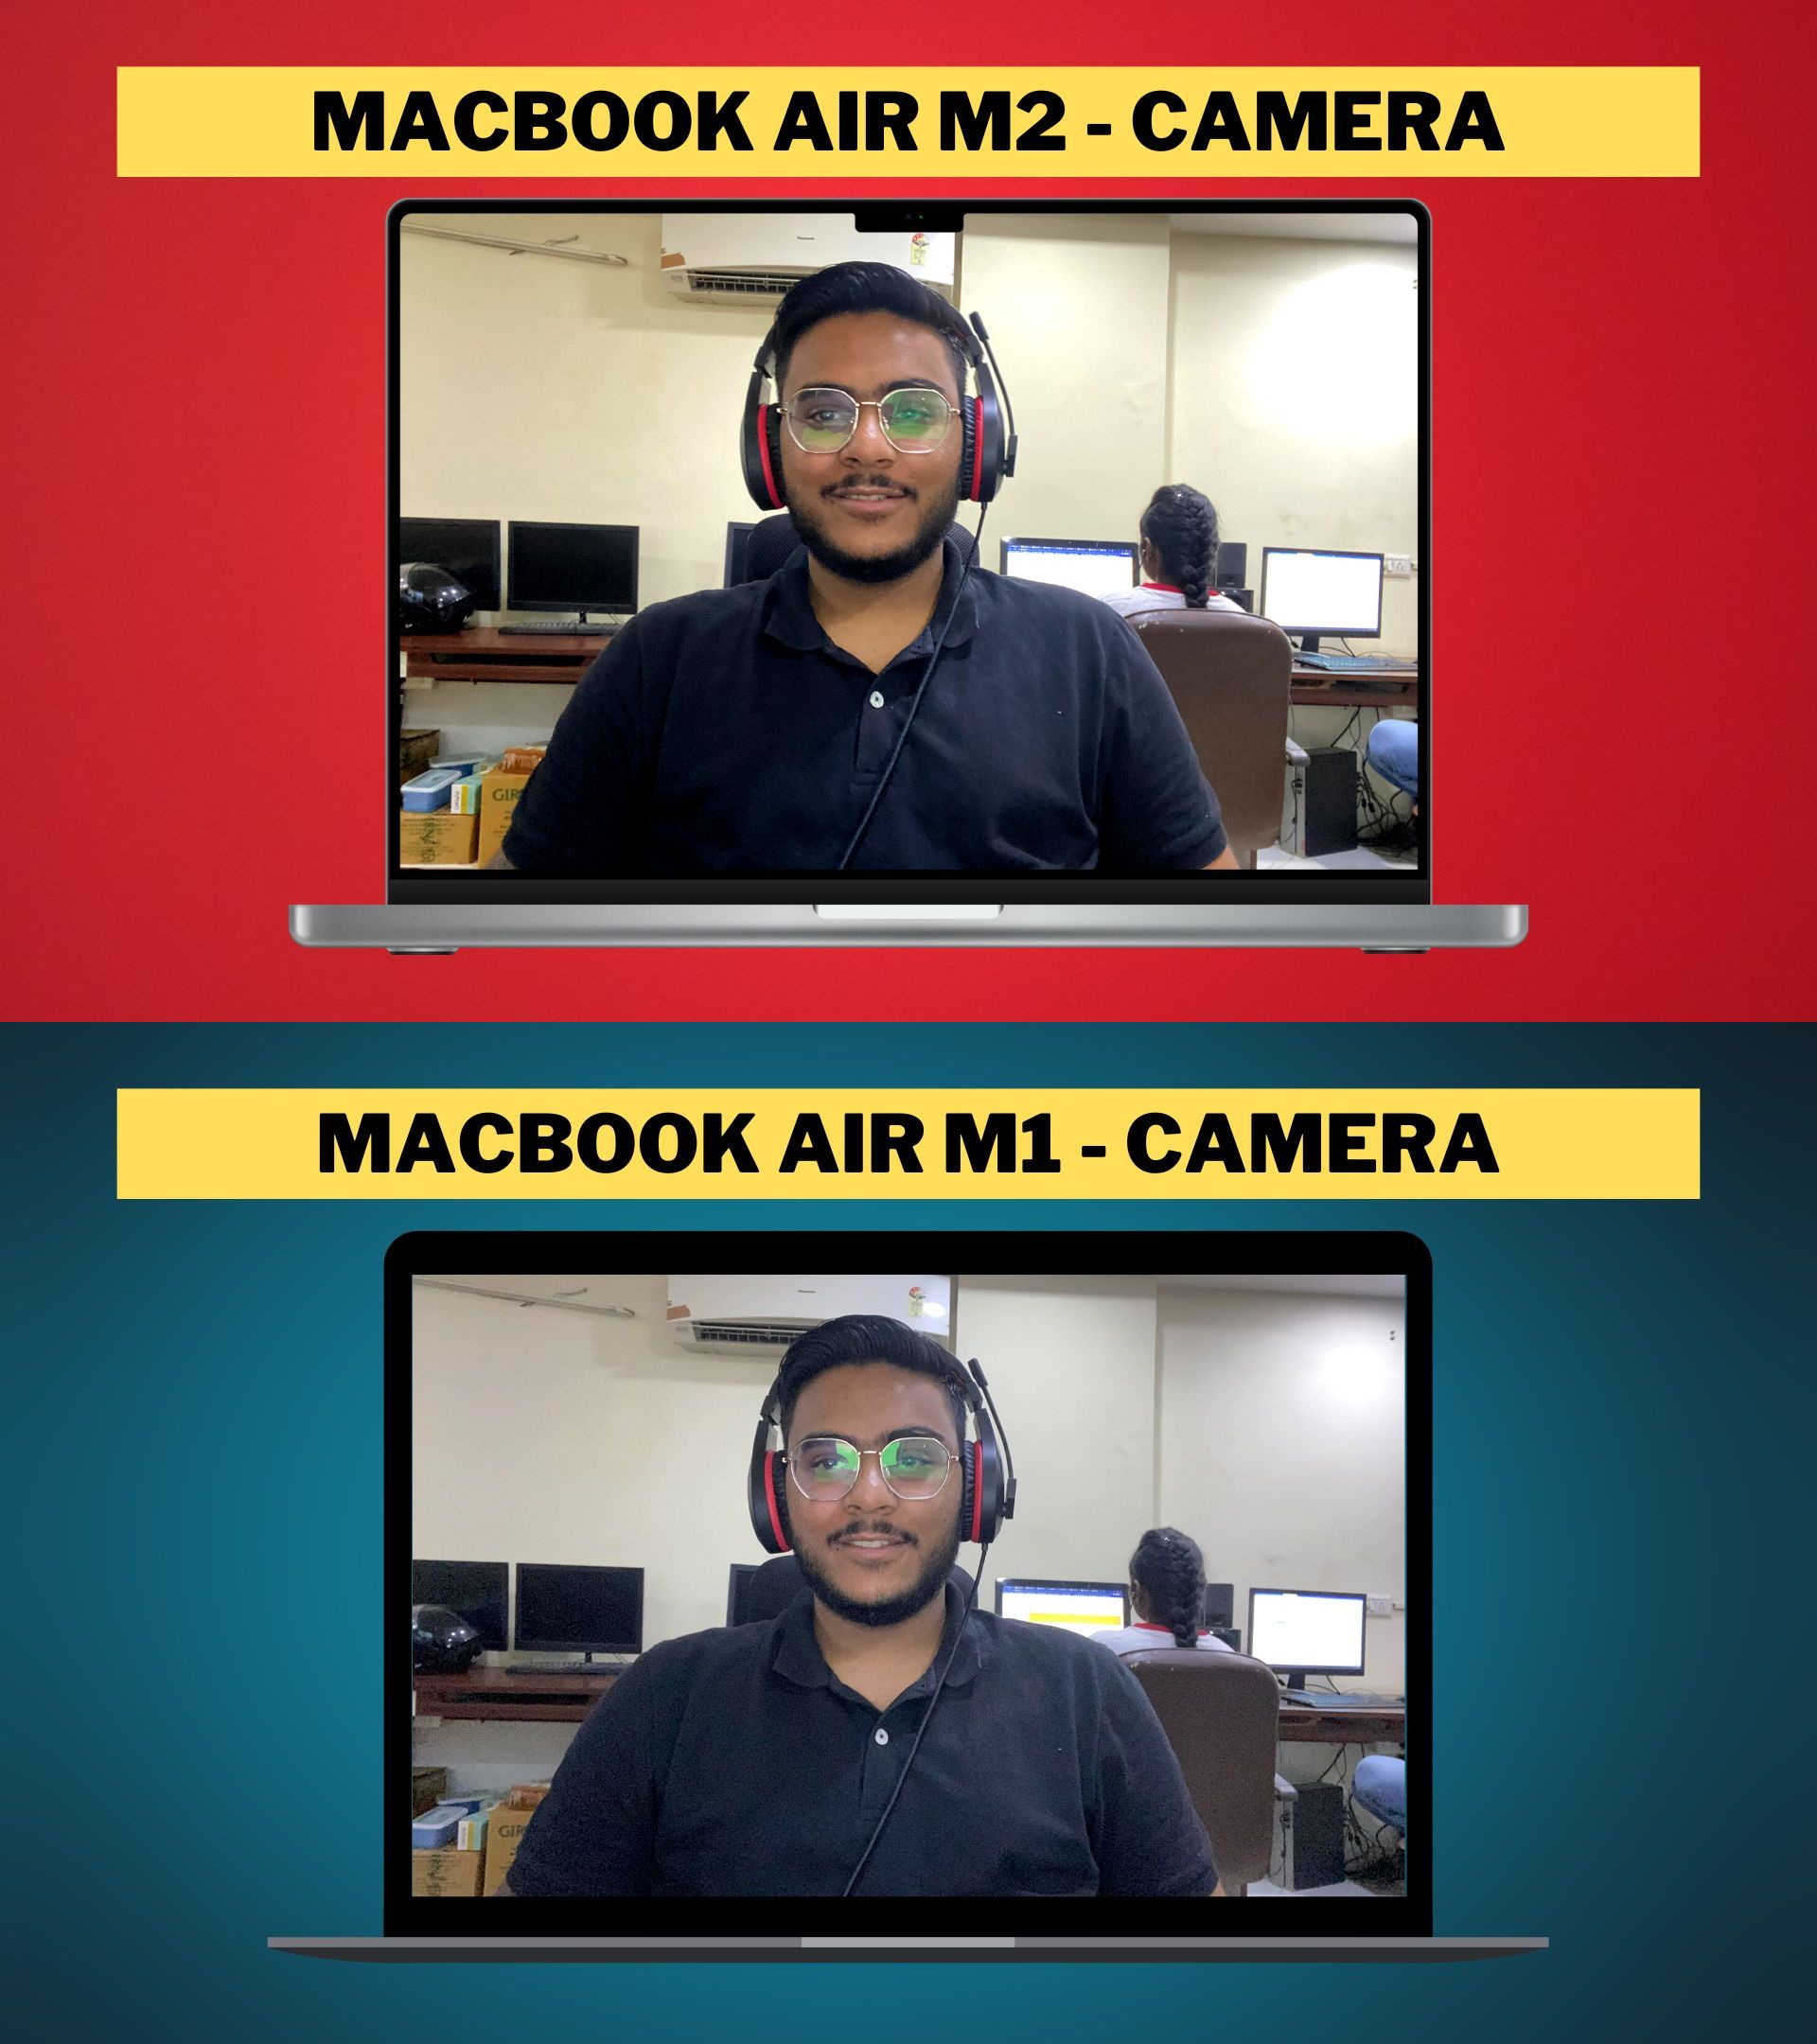 MacBook Air M2 vs MacBook Air M1 Camera